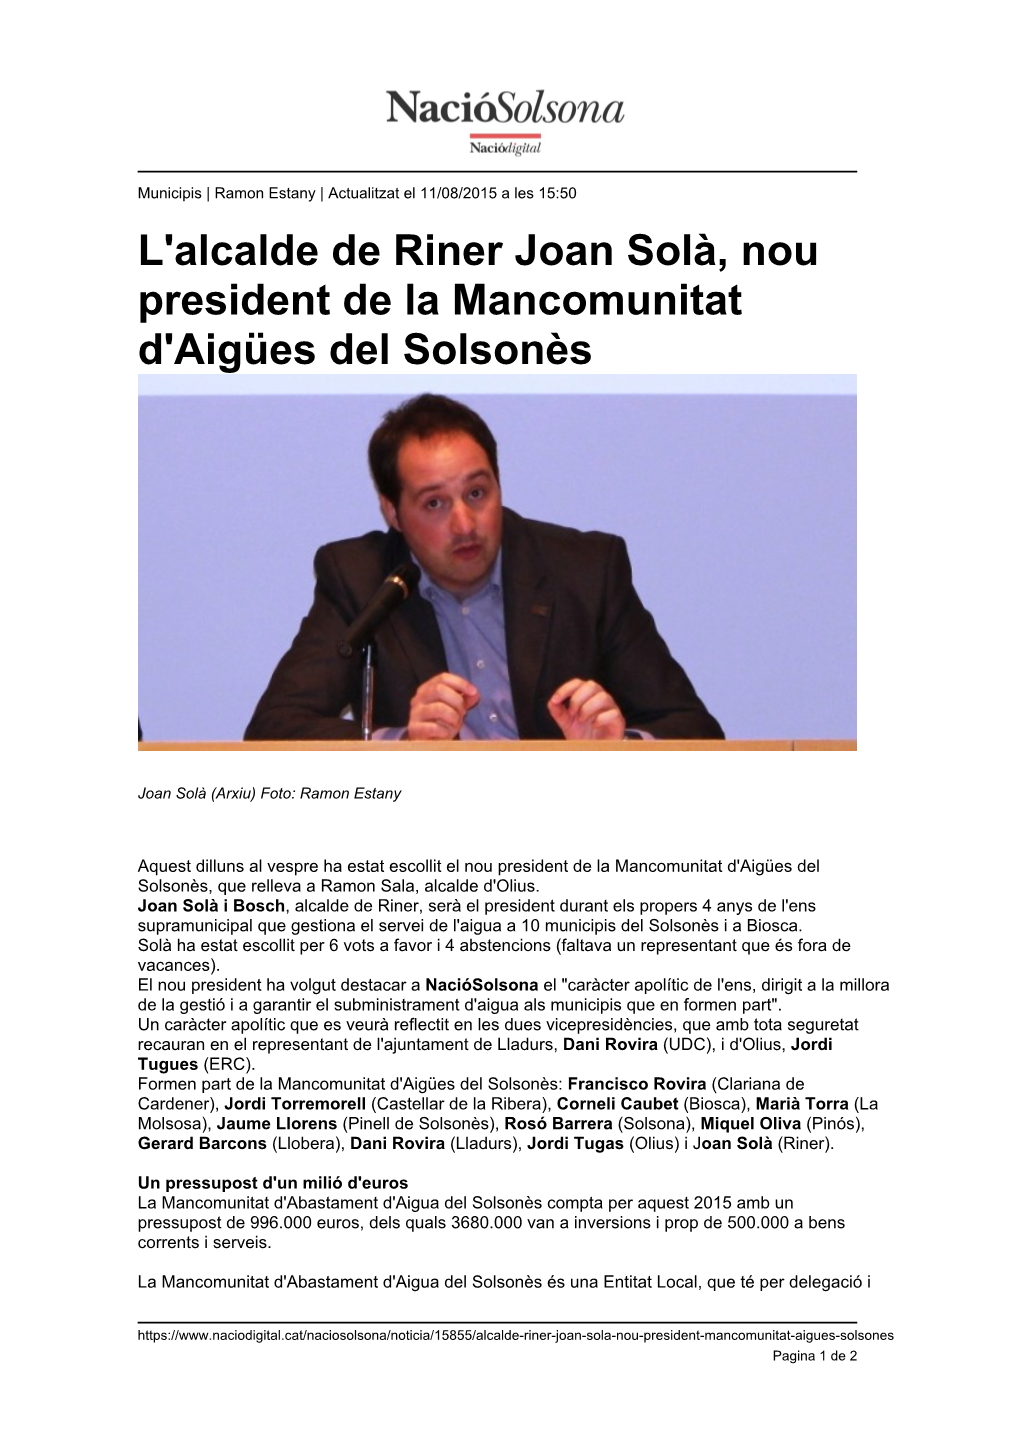 L'alcalde De Riner Joan Solà, Nou President De La Mancomunitat D'aigües Del Solsonès